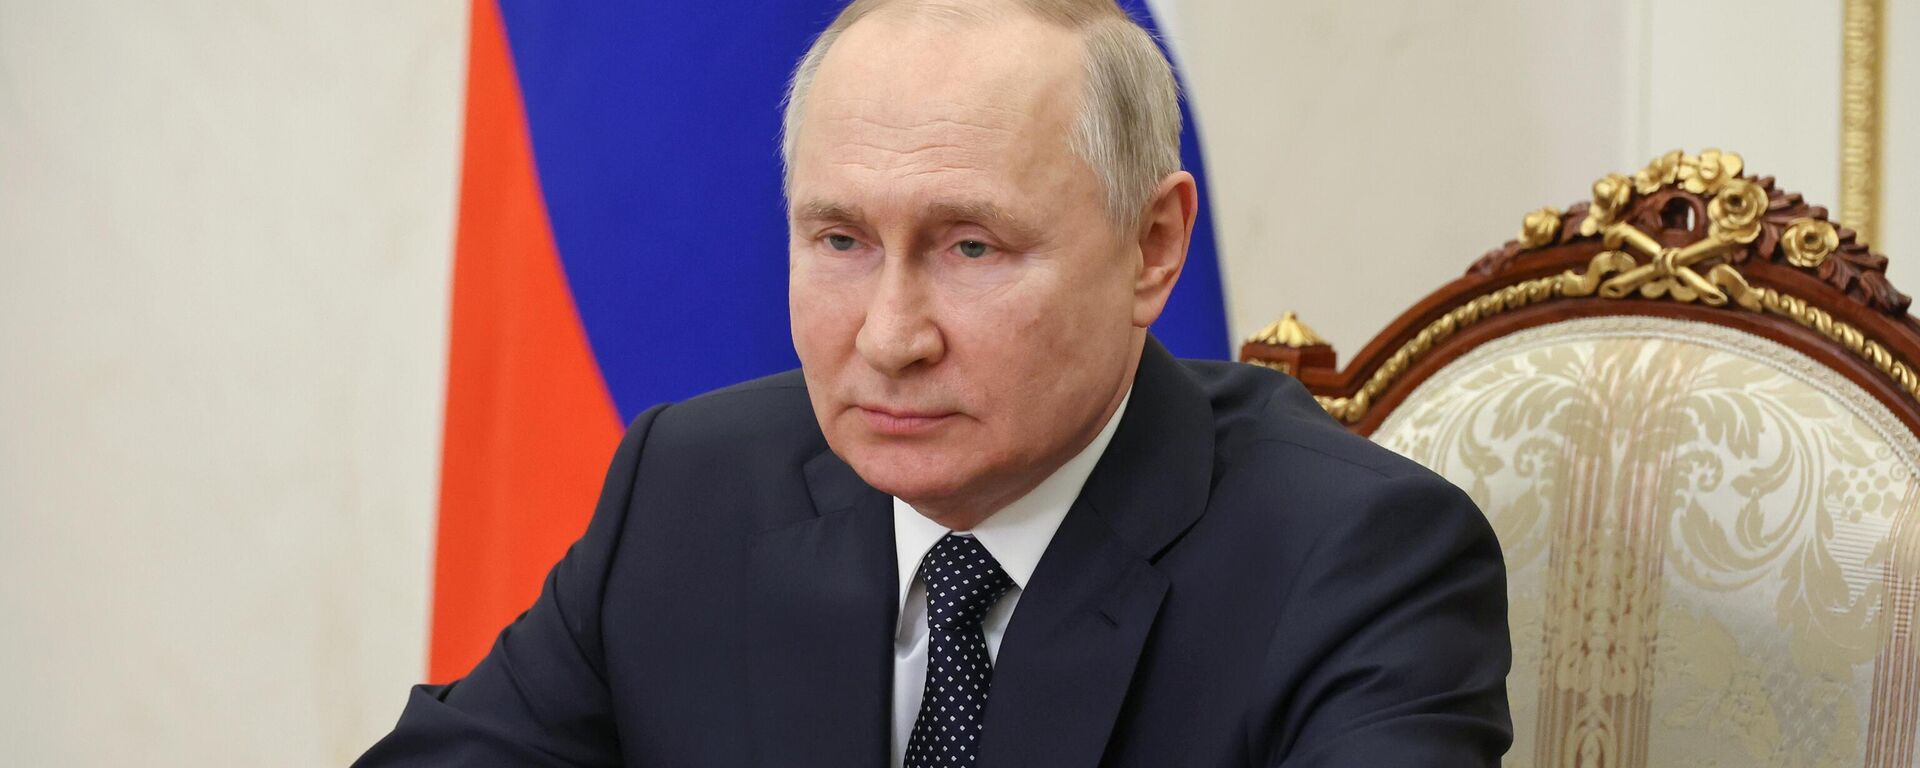 Vladimir Putin trong một bài phát biểu qua video gửi tới những người tham gia cuộc họp quốc tế của các đại diện cấp cao phụ trách các vấn đề an ninh đang diễn ra ở khu vực Matxcơva dưới sự bảo trợ của Hội đồng An ninh Liên bang Nga. - Sputnik Việt Nam, 1920, 24.05.2023